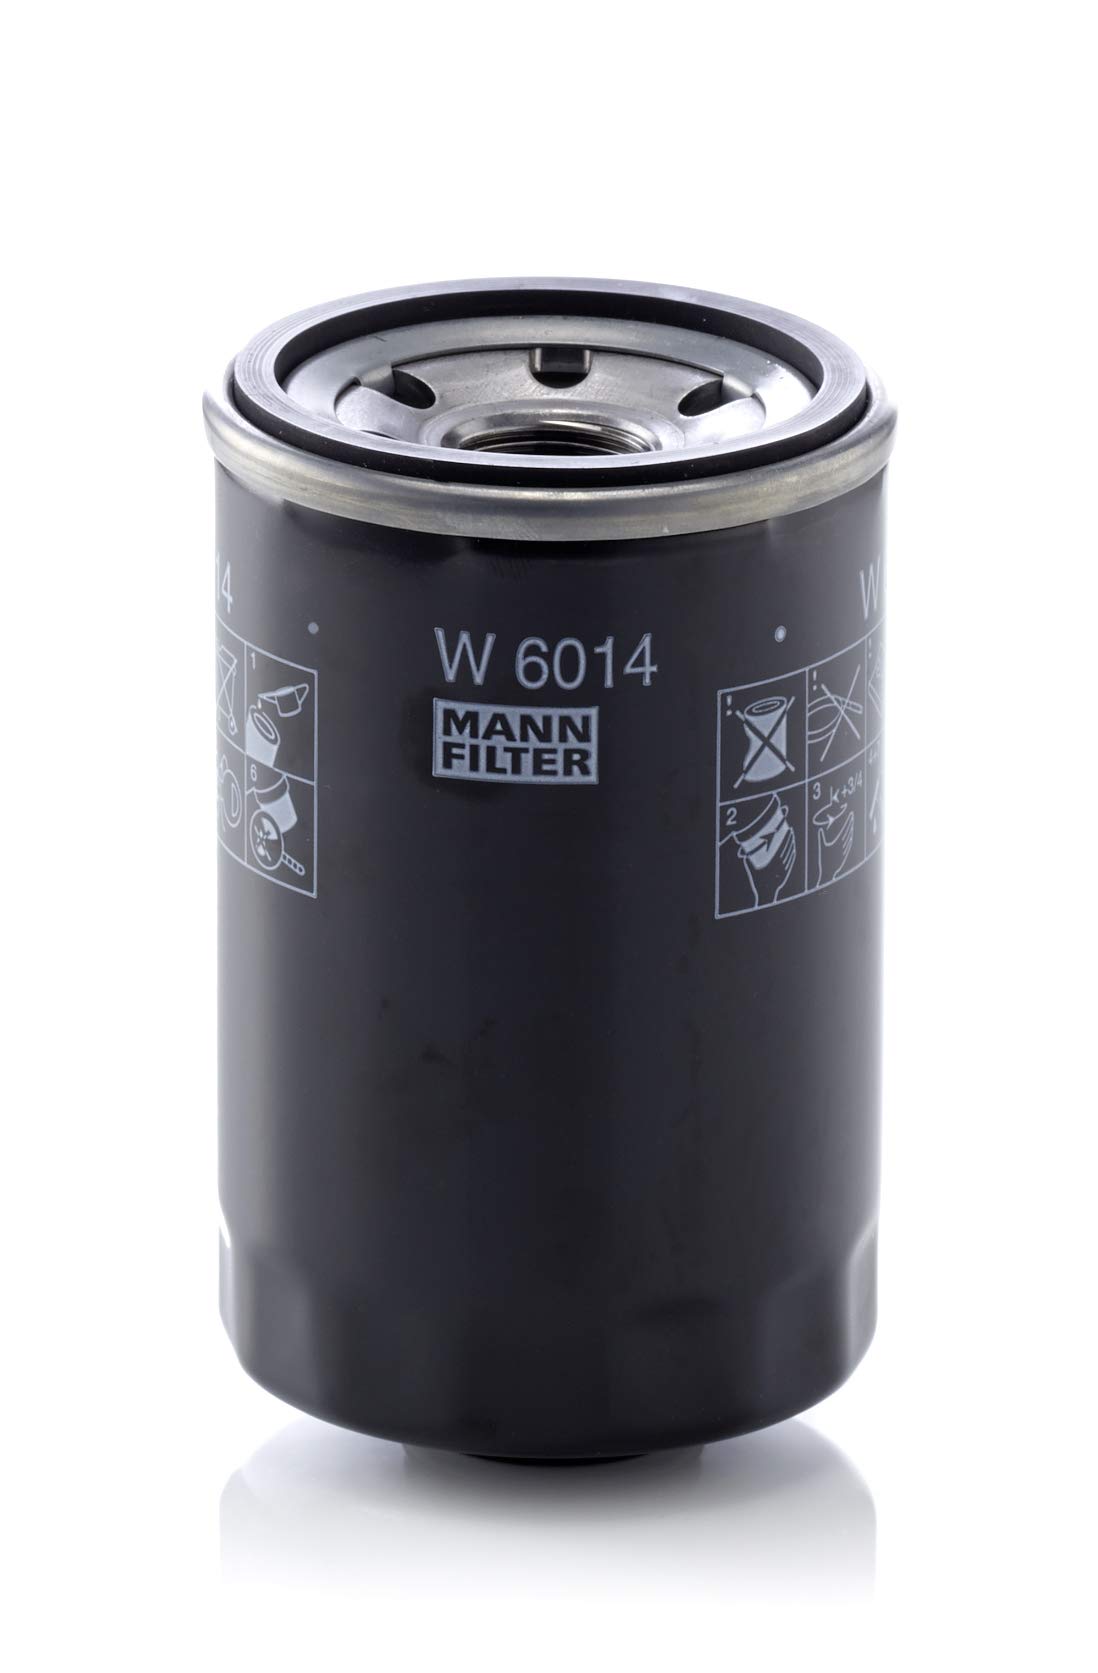 MANN-FILTER W 6014 Ölfilter – Für PKW von MANN-FILTER